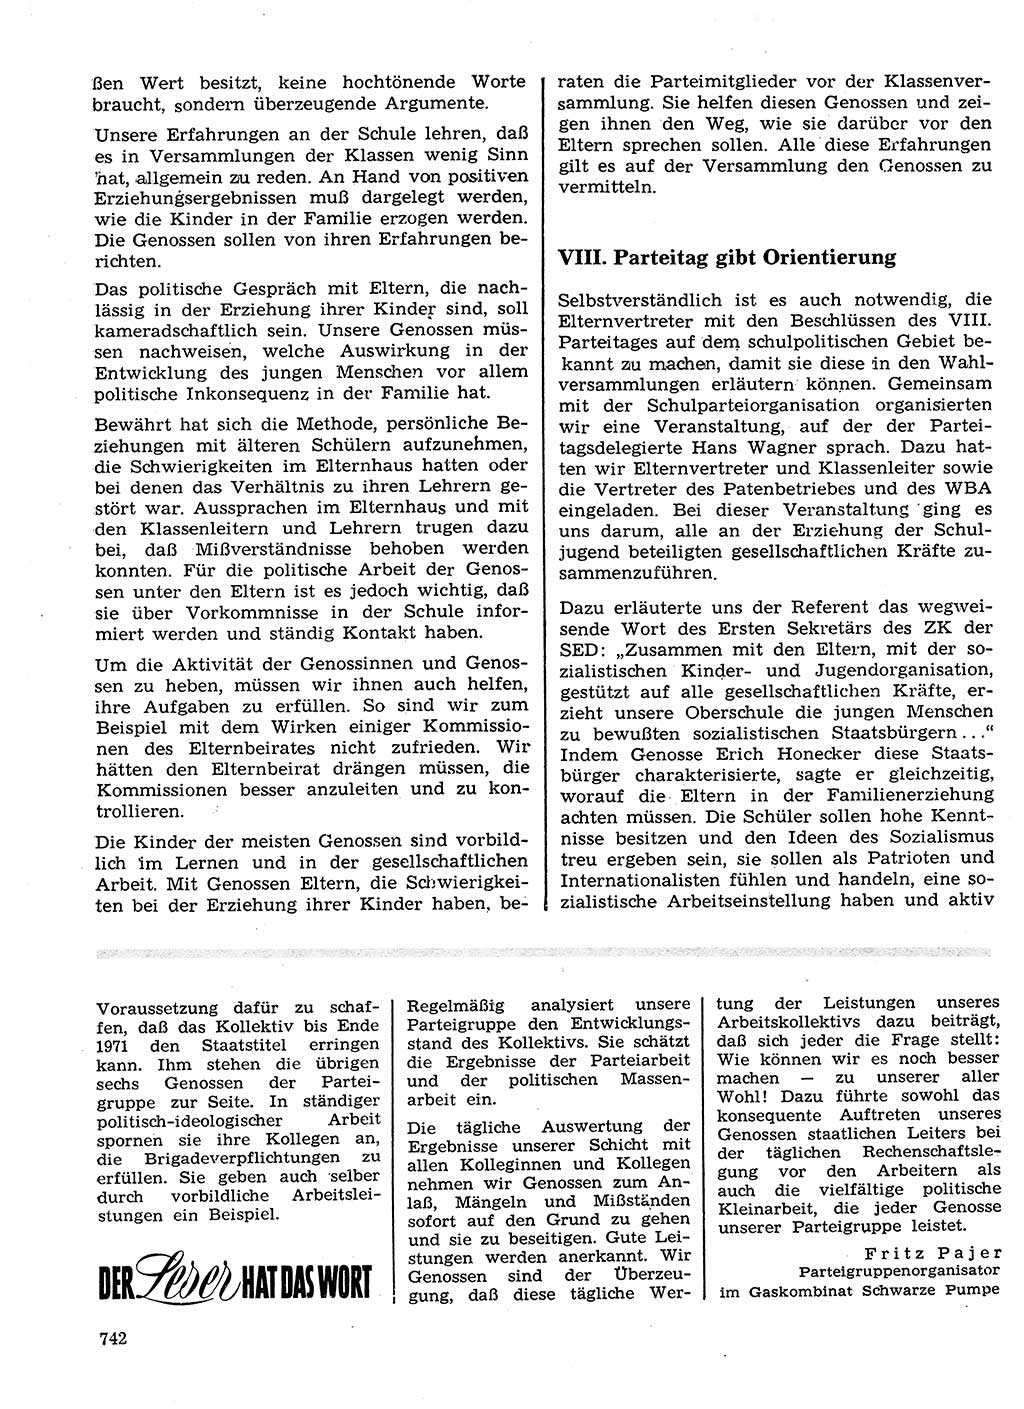 Neuer Weg (NW), Organ des Zentralkomitees (ZK) der SED (Sozialistische Einheitspartei Deutschlands) für Fragen des Parteilebens, 26. Jahrgang [Deutsche Demokratische Republik (DDR)] 1971, Seite 742 (NW ZK SED DDR 1971, S. 742)